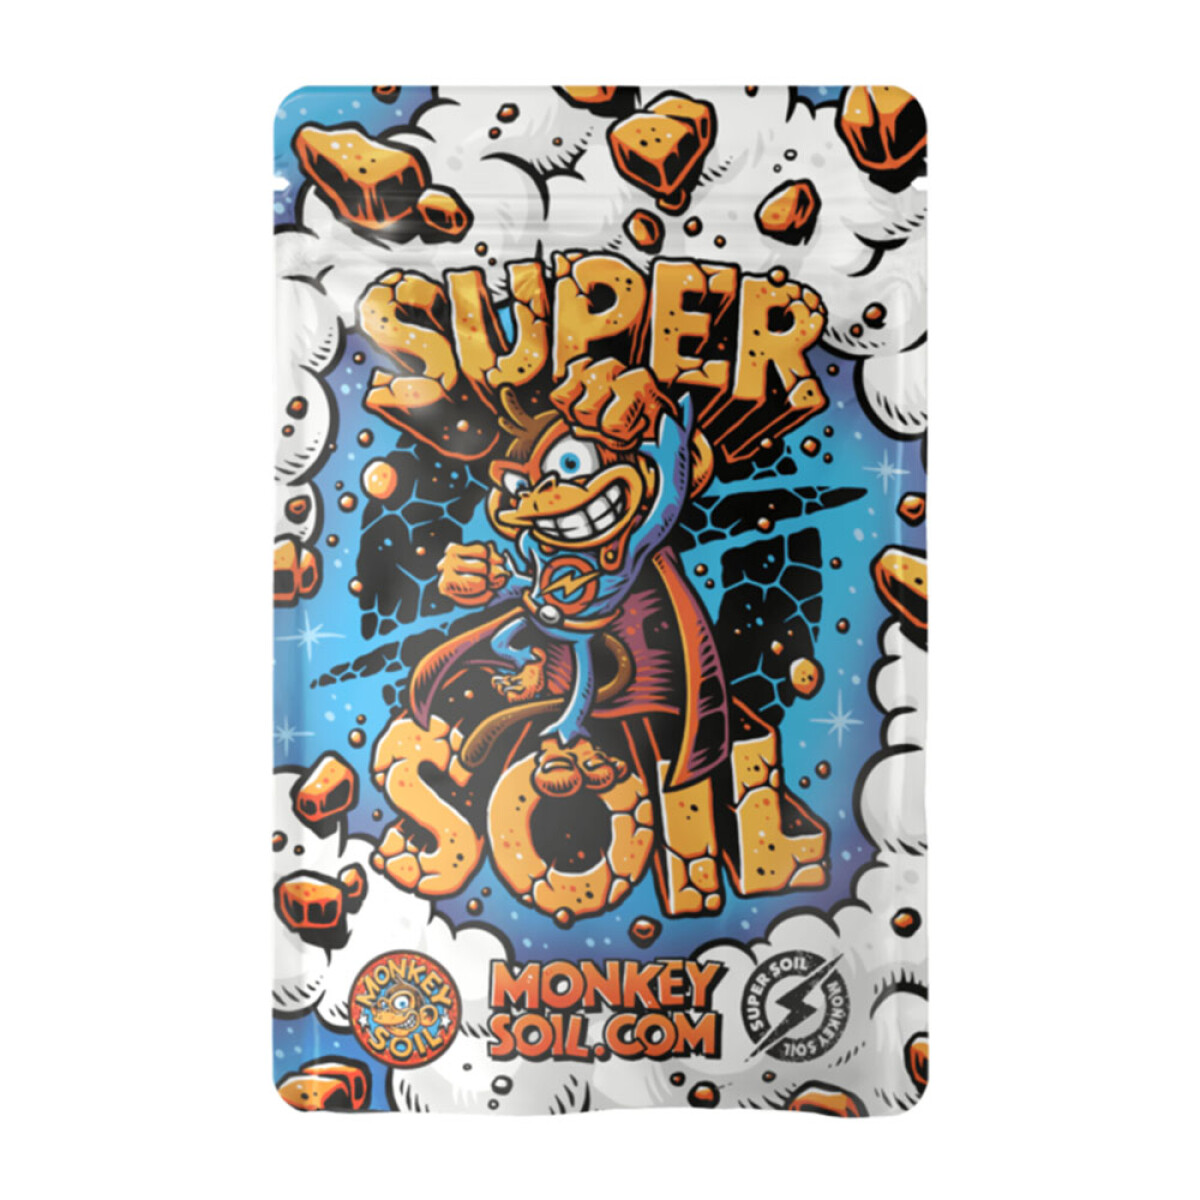 SUPERSOIL MONKEY SOIL - 900GR 